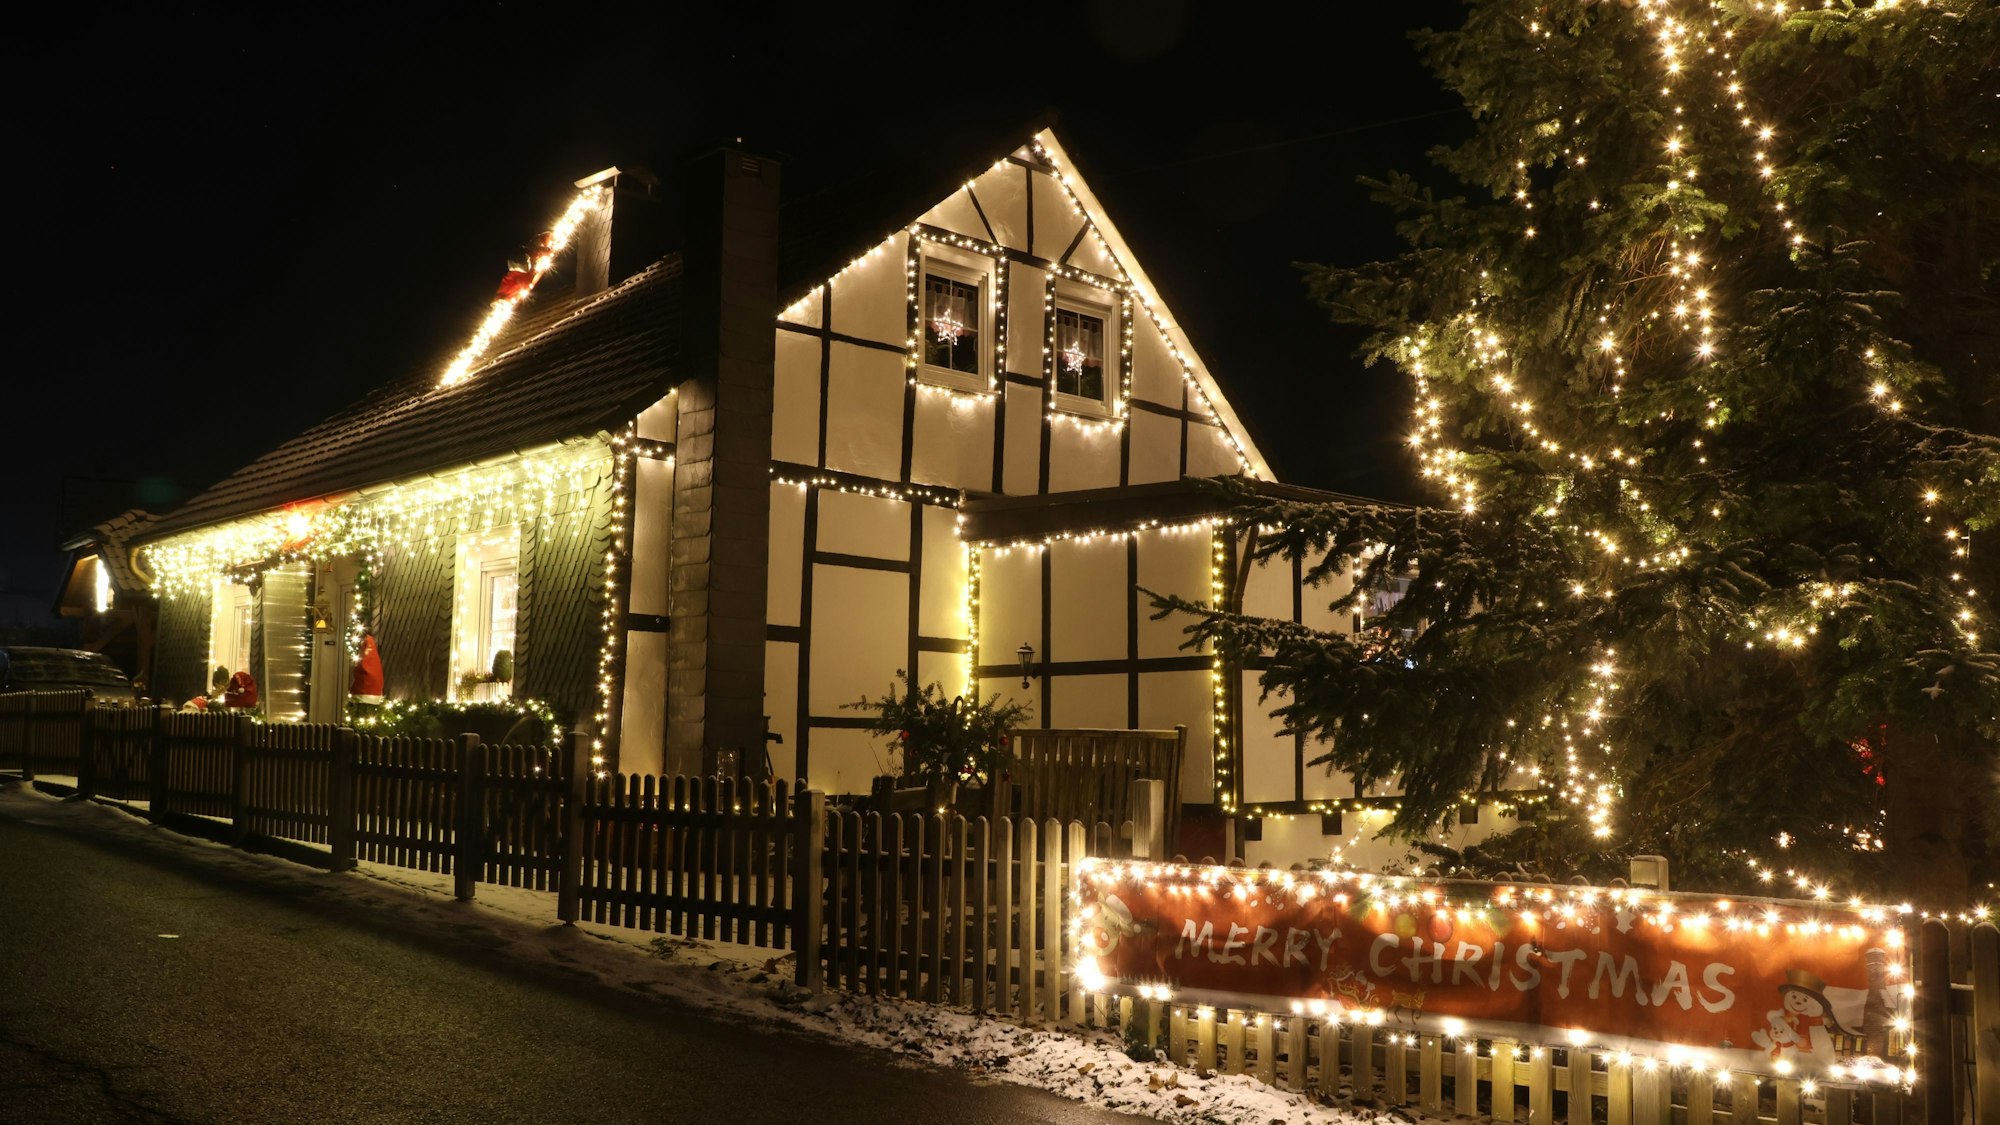 Die Konturen eines alten Fachwerkhauses sind mit Lichterketten nachgezeichnet. Am Zaun hängt ein rotes Banner, auf dem "Merry Christmas“ steht.